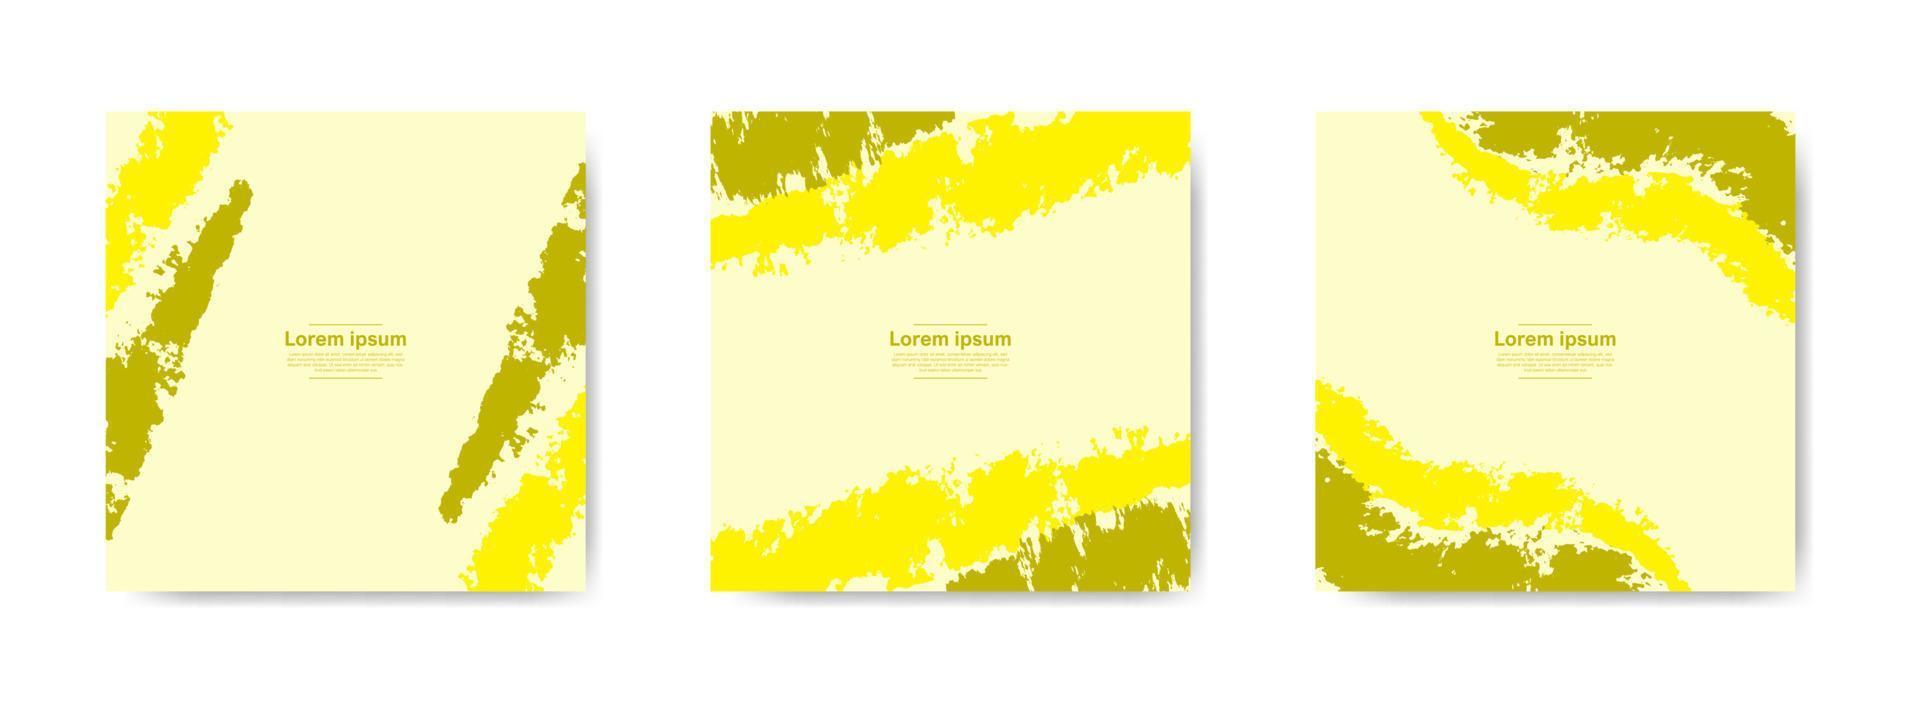 collection de bannières grunge abstraites jaunes pour les publications et les histoires sur les réseaux sociaux vecteur